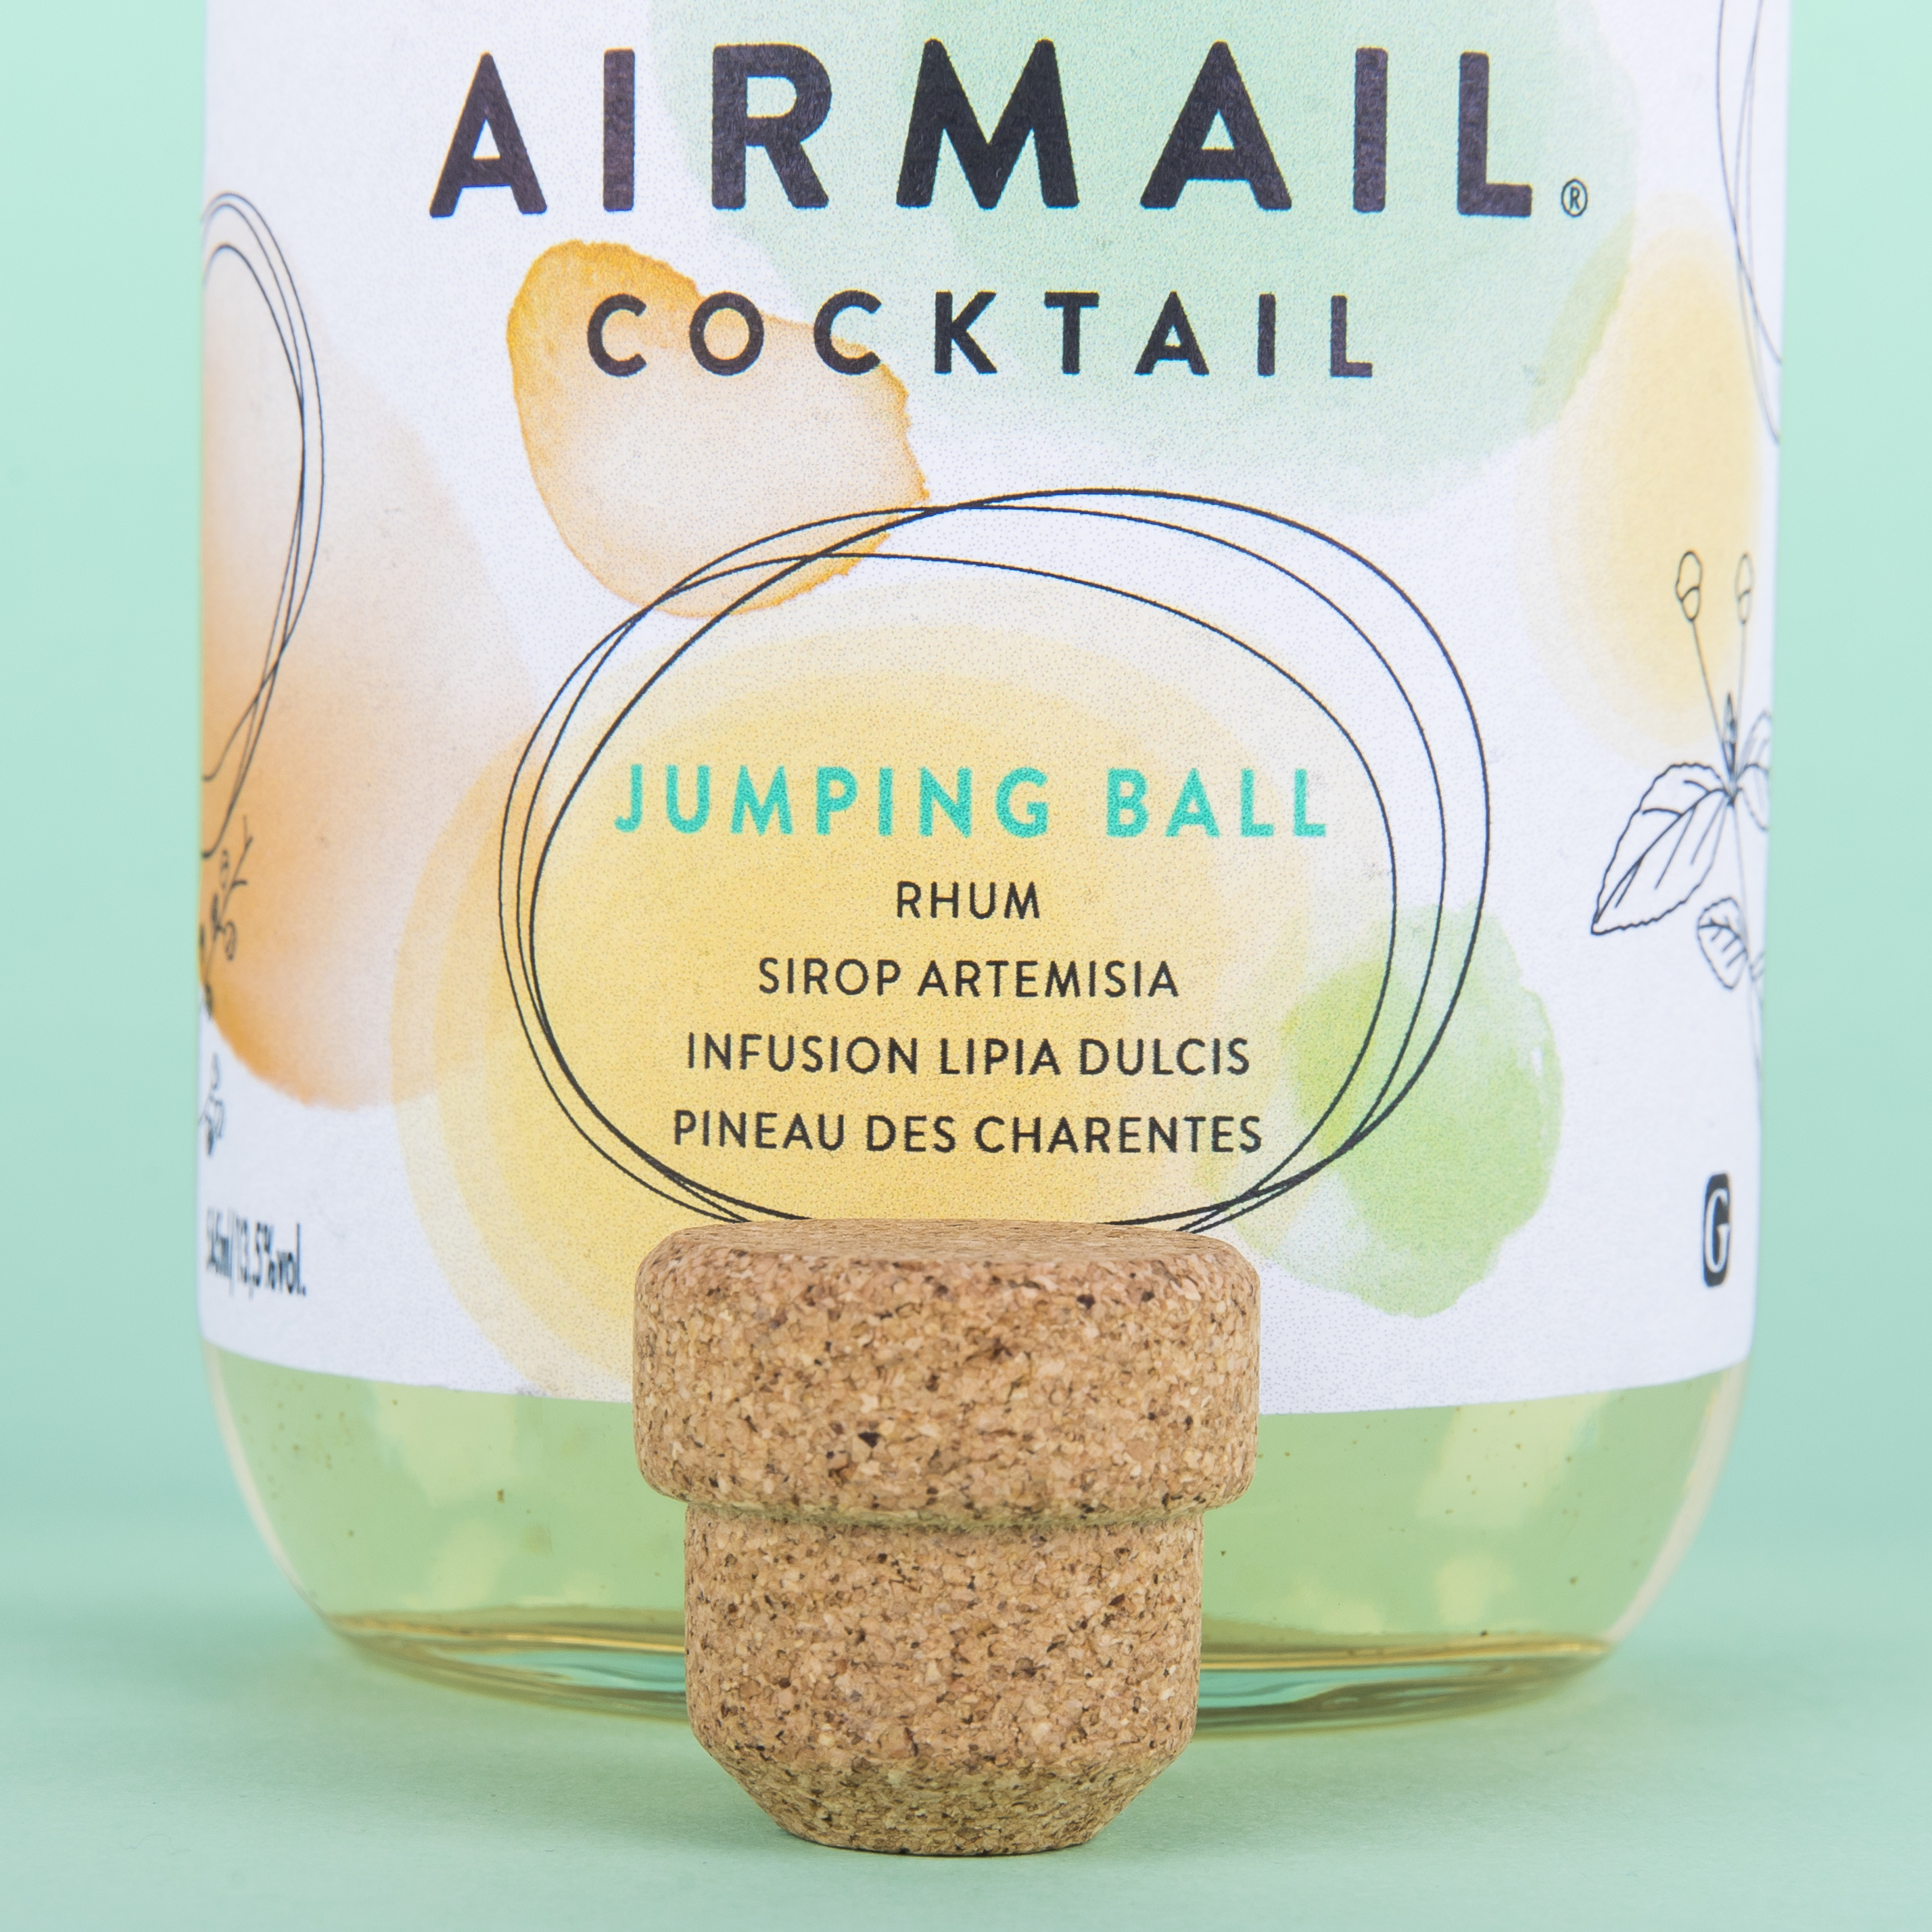 Focus projet Airmail cocktail, cocktail charentais prêt à boire. Bouchon monomatériaux : shape.